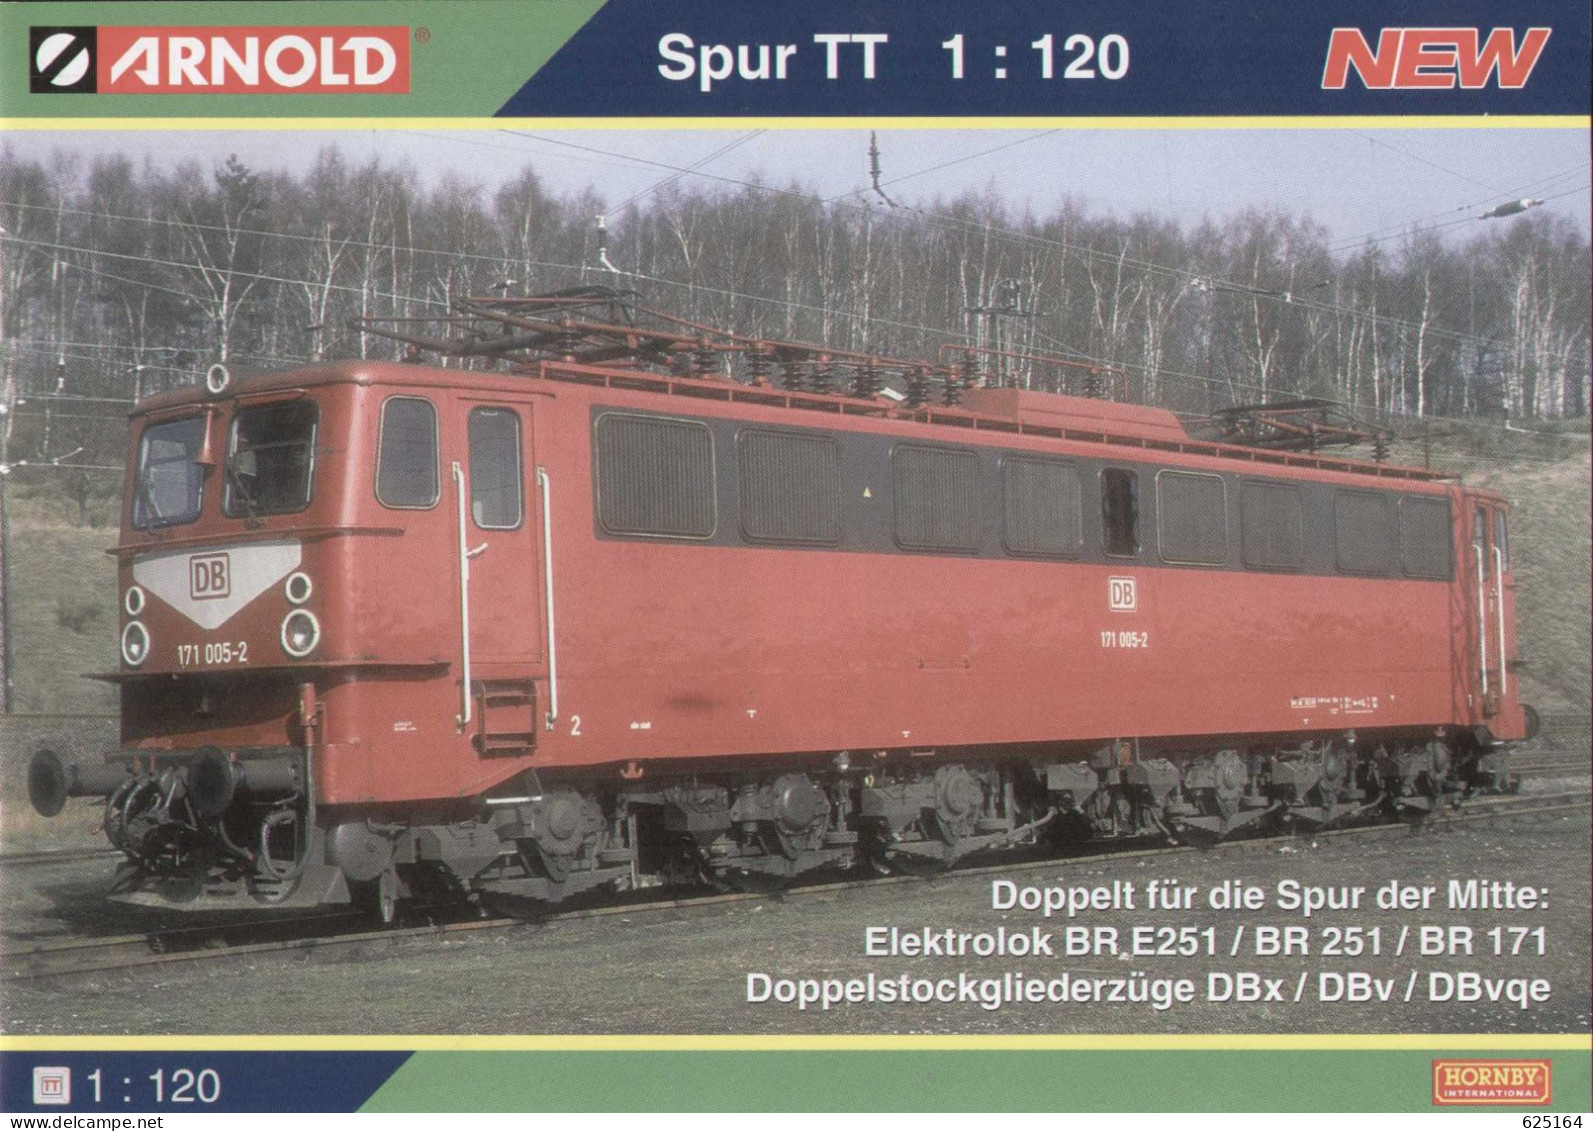 Catalogue ARNOLD Neuheiten 2014 Spur TT 1/120 (Hornby) - German